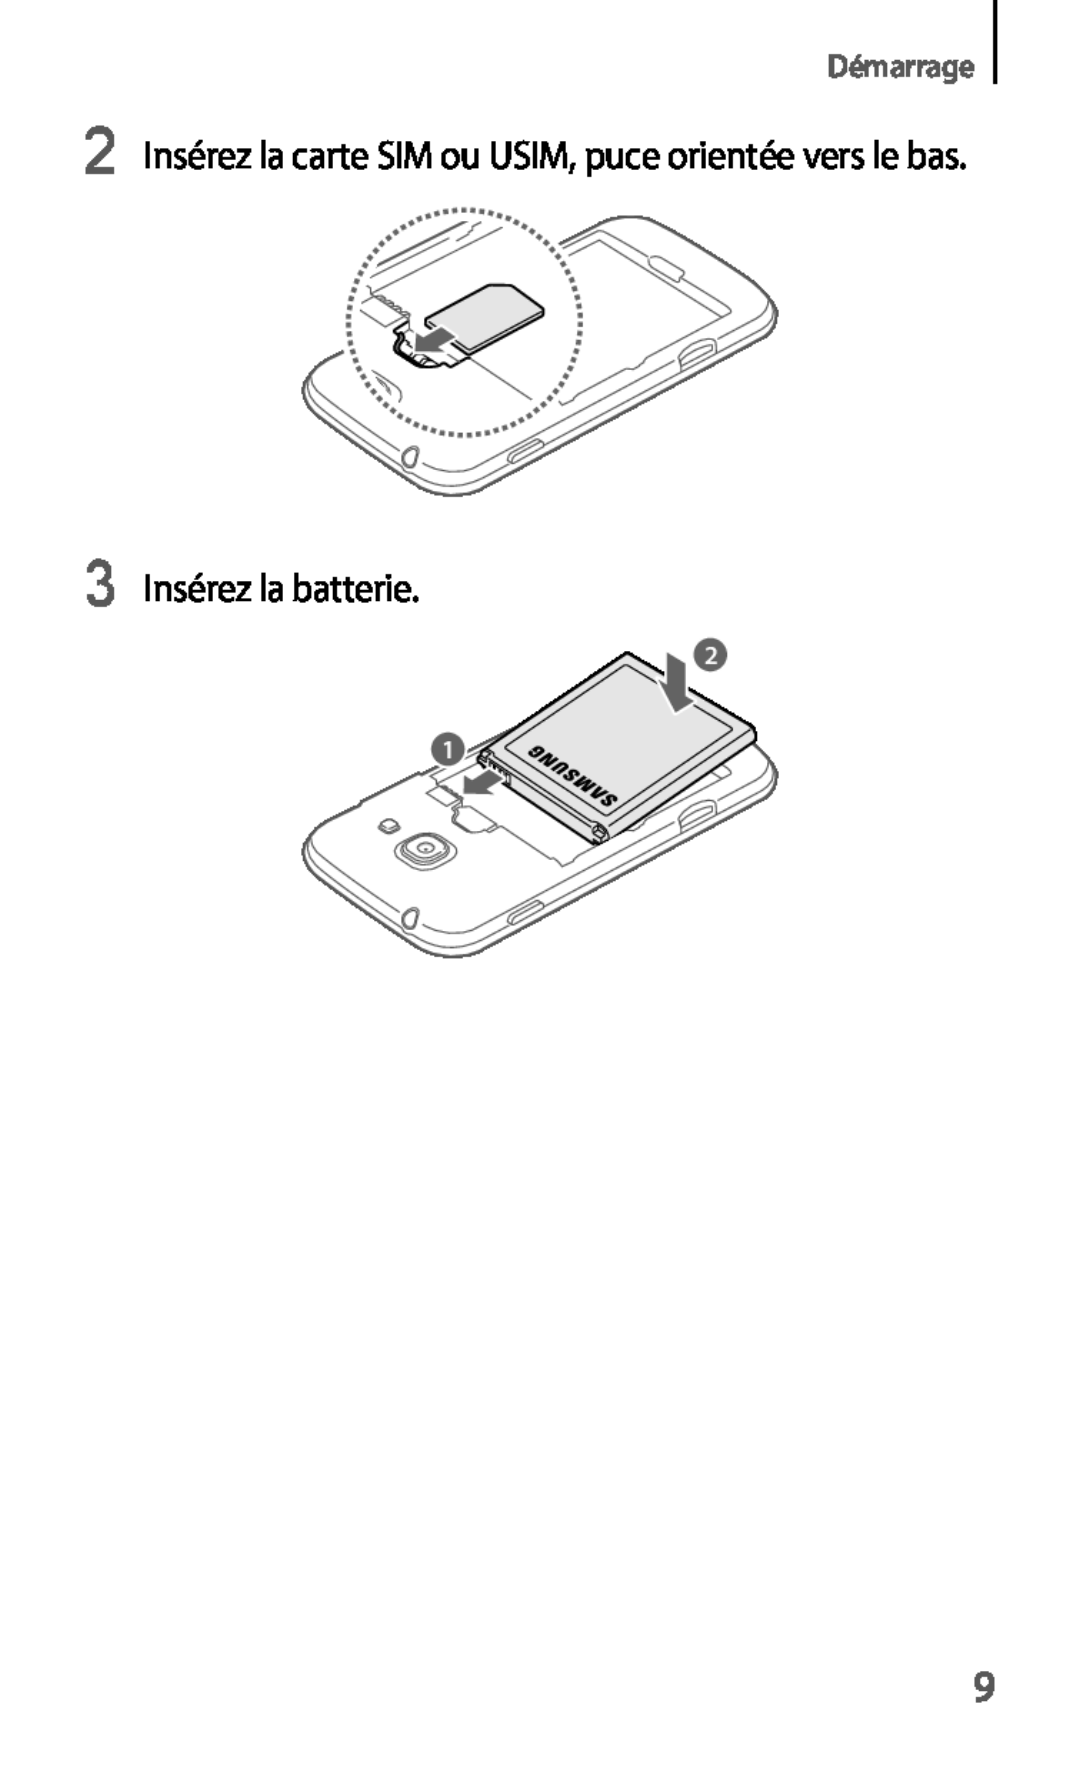 Samsung GT-S7275UWAXEF manual Insérez la batterie, Insérez la carte SIM ou USIM, puce orientée vers le bas, Démarrage 